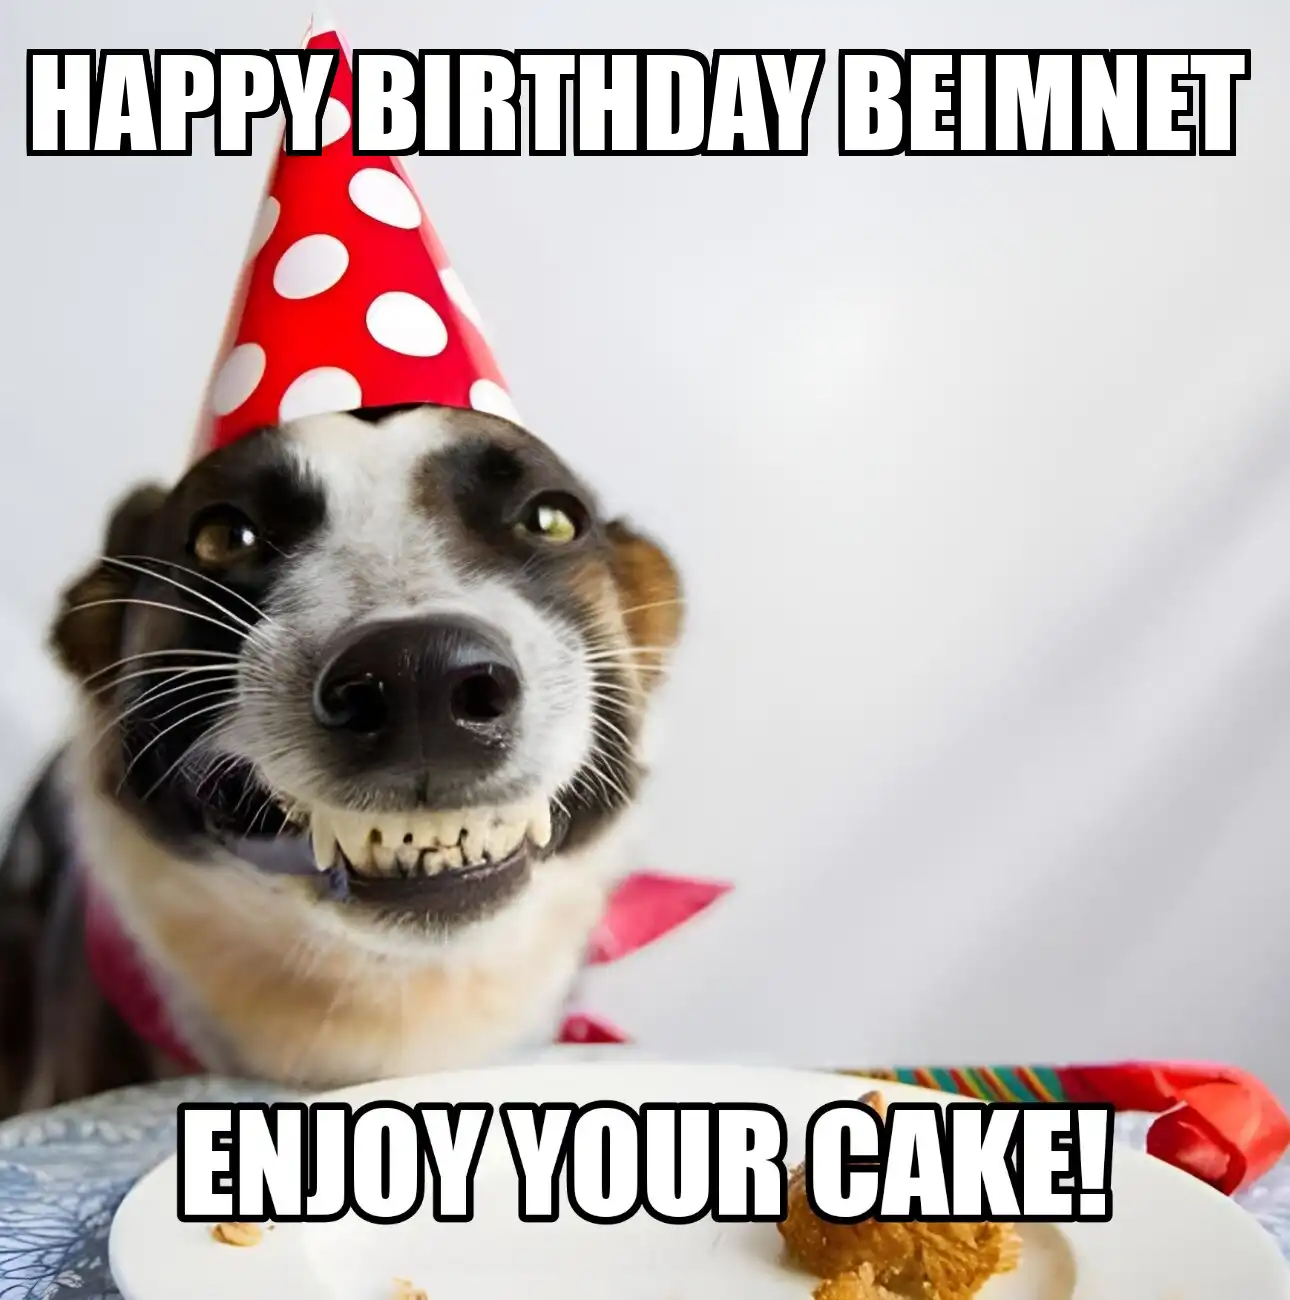 Happy Birthday Beimnet Enjoy Your Cake Dog Meme